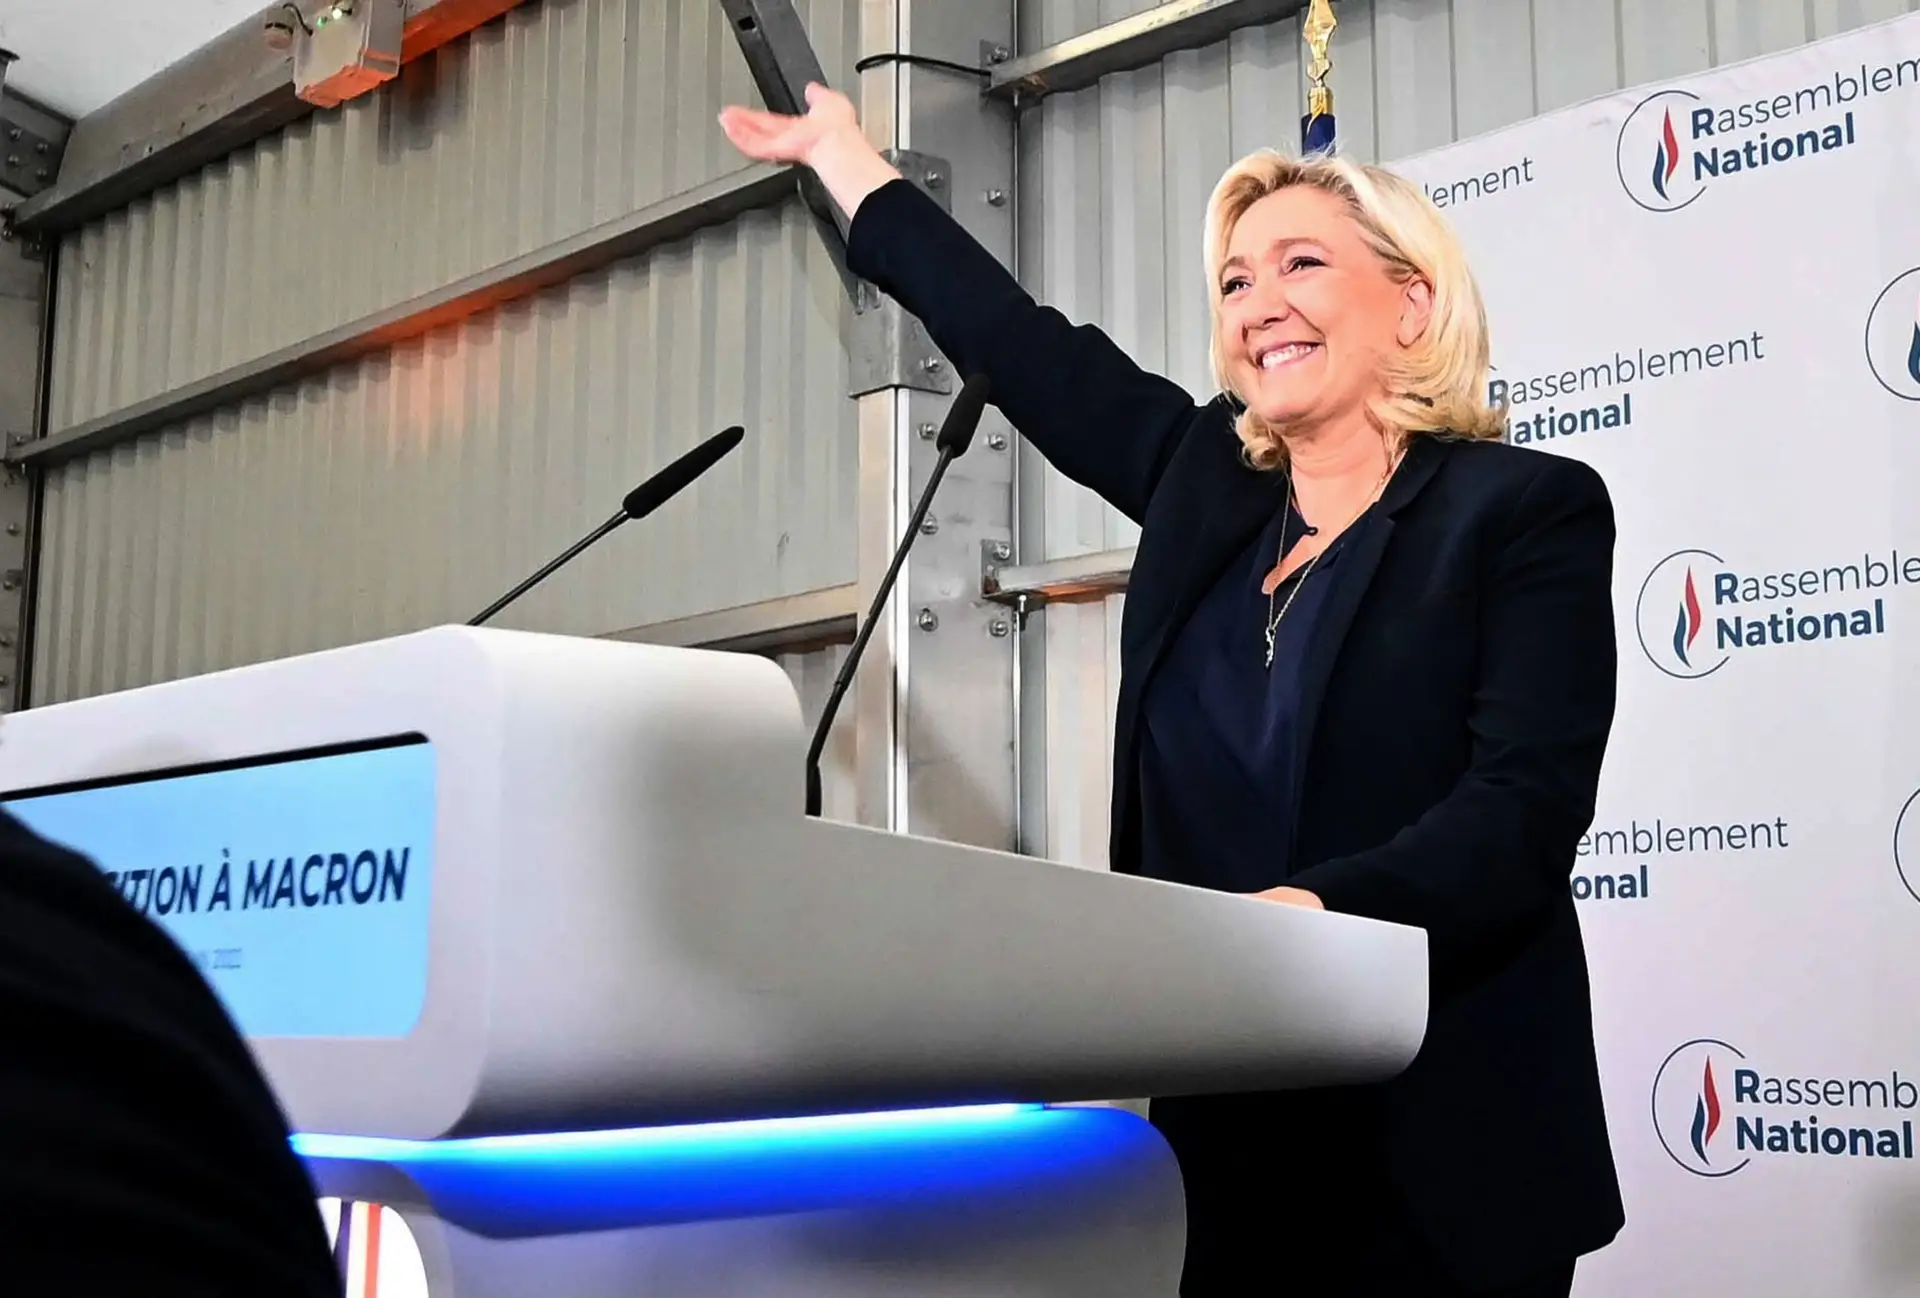 Le Pen está longe de conseguir ganhar eleições francesas em 2027, diz investigador